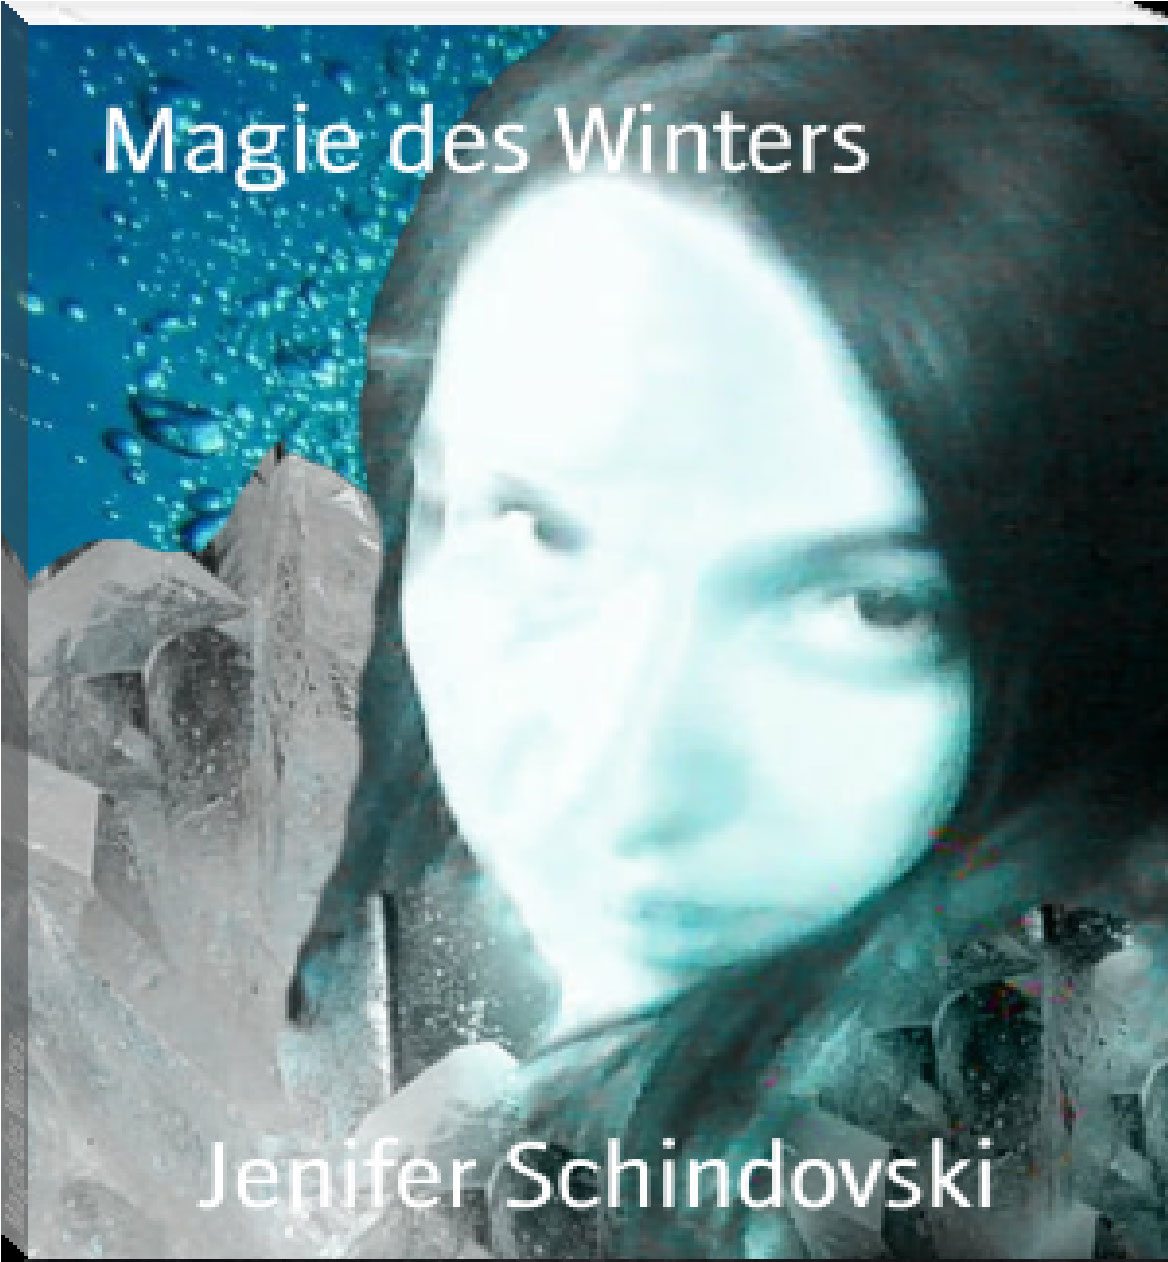 Magie des Winters rendition image